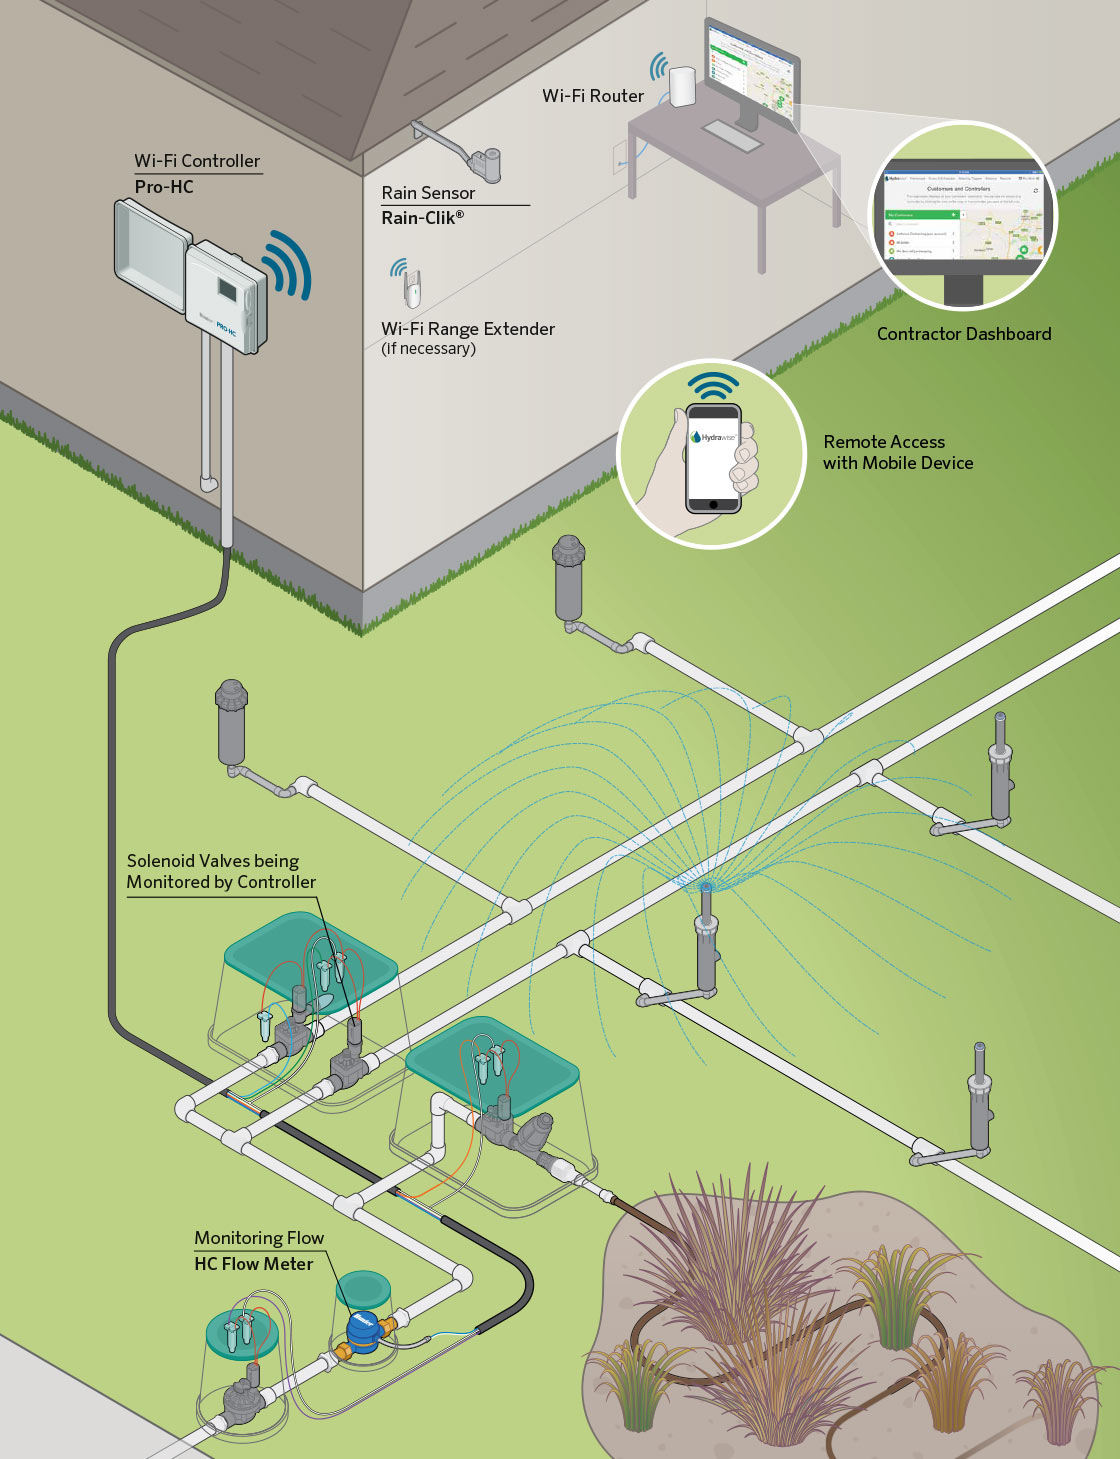 تخطيط نظام الري عبر تقنية Wi-Fi